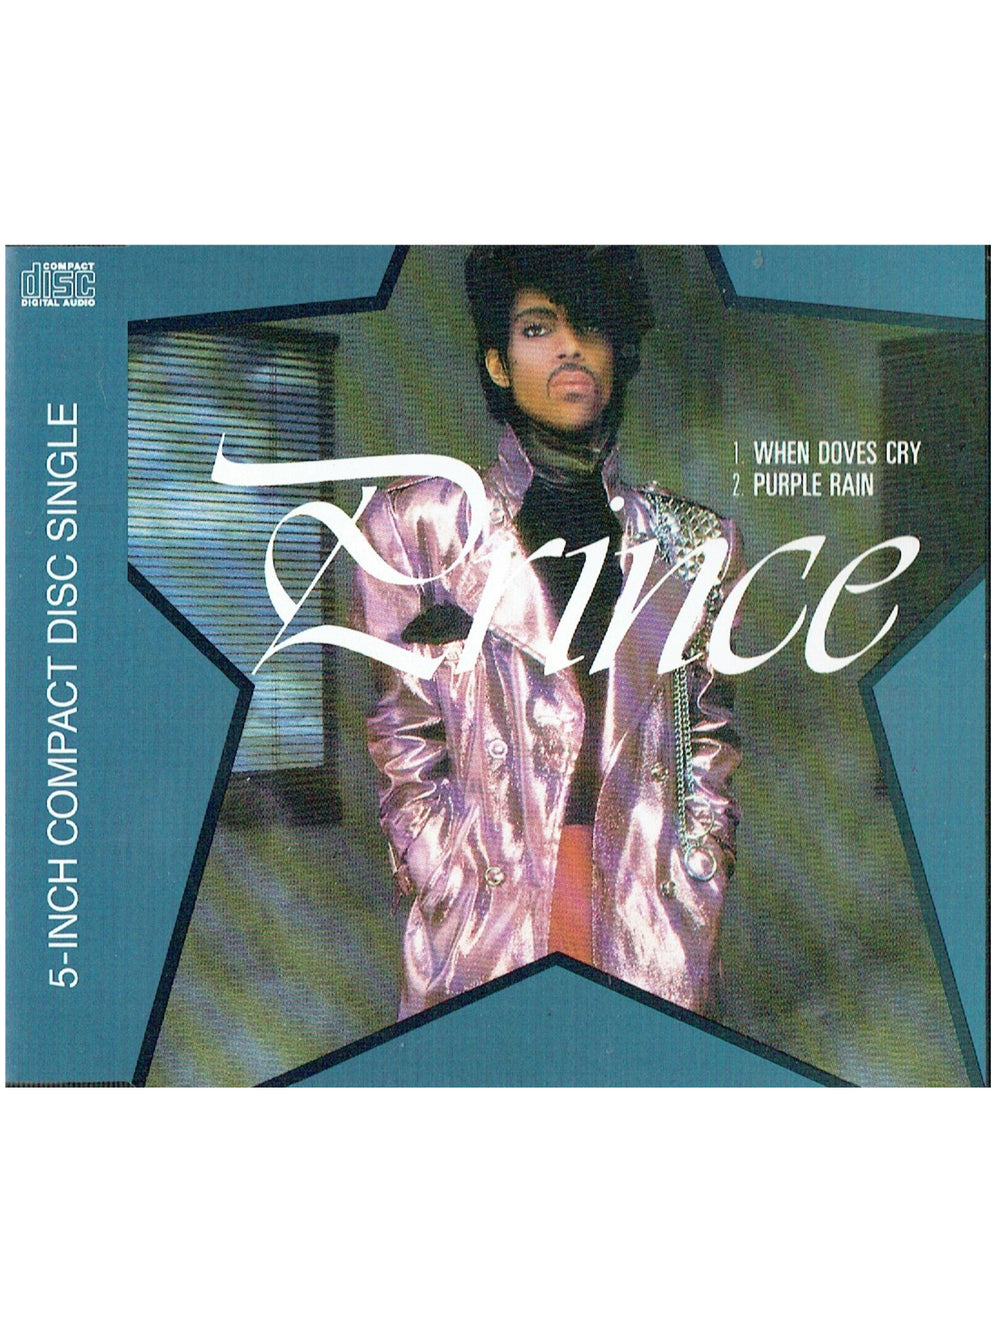 Prince – When Doves Cry Purple Rain CD Single 5" EU Preloved: 1990